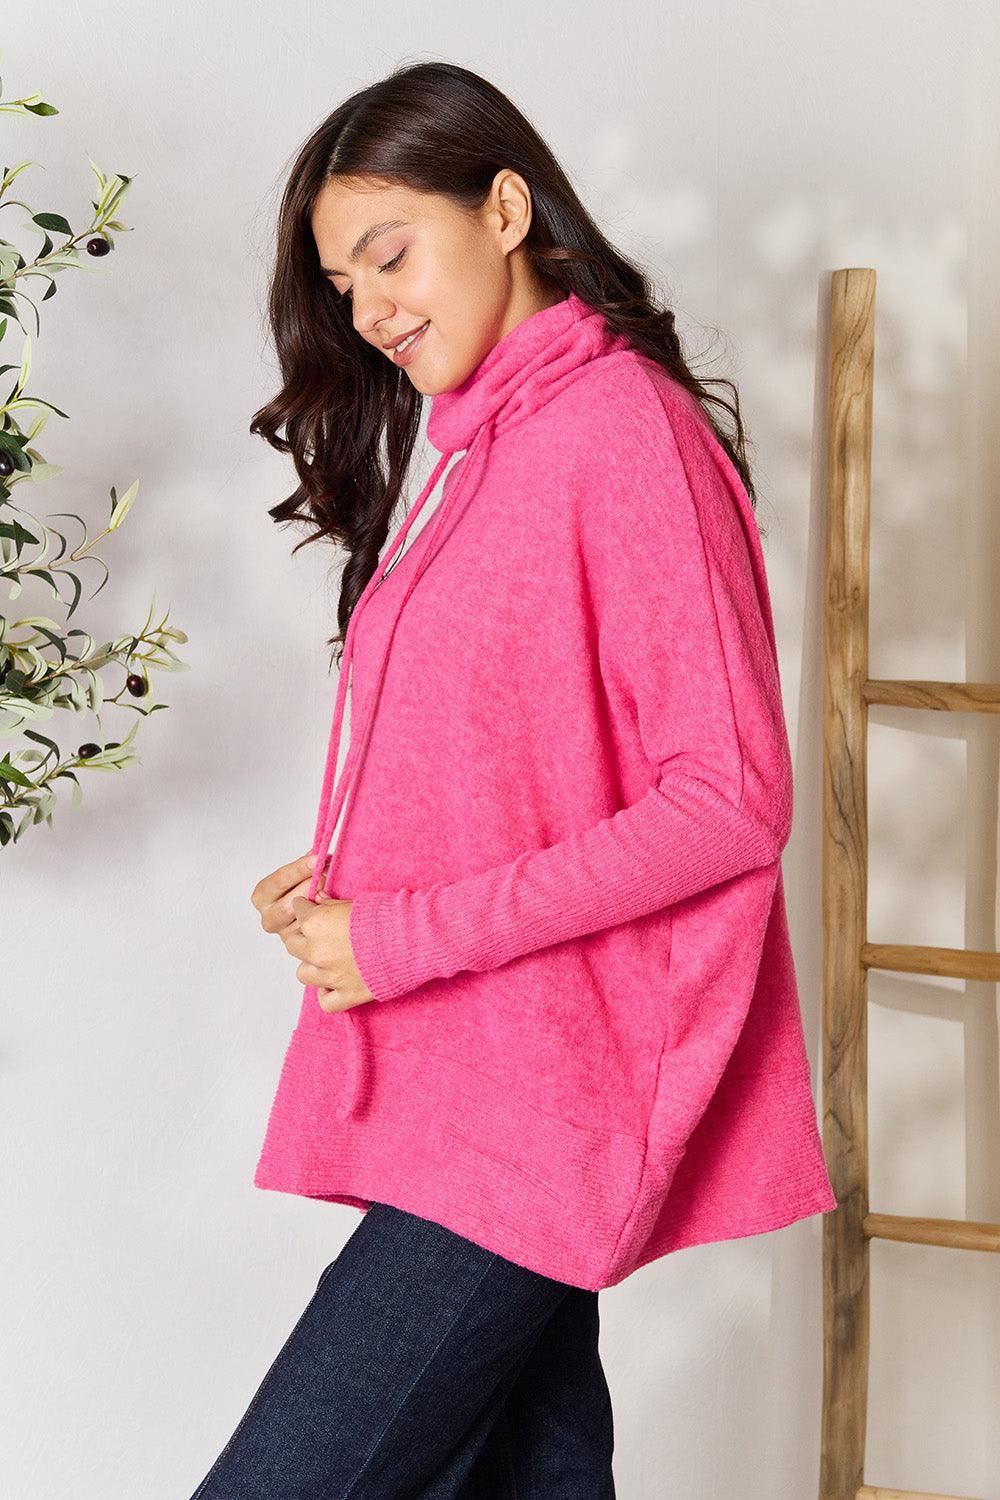 Zenana Oversized Mock Neck Sweater - Pink - Inspired Eye Boutique